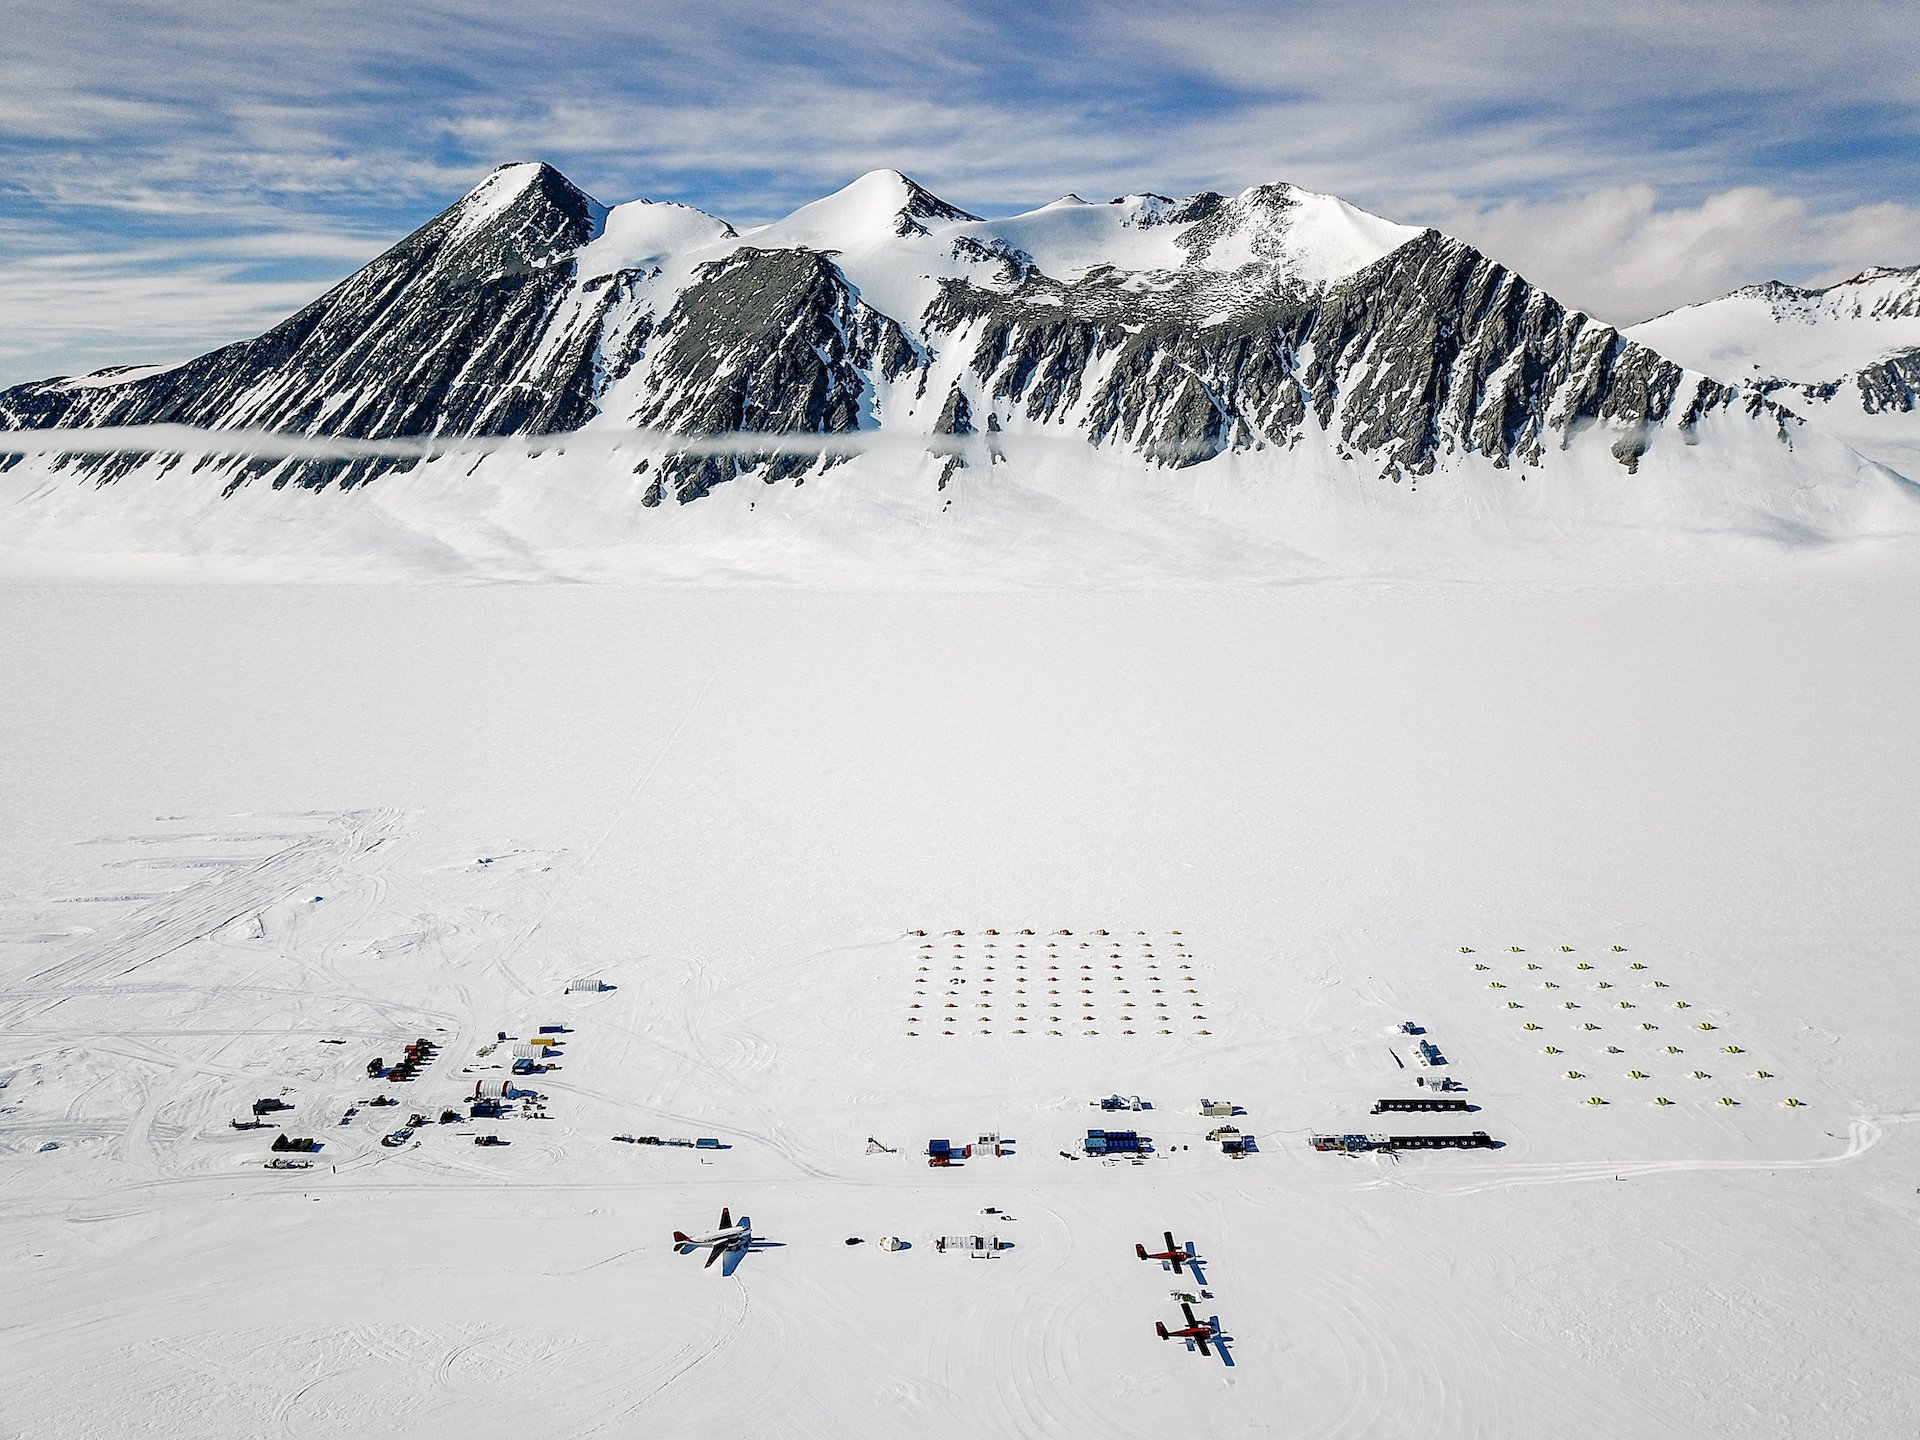 Triple 7 Expedition: Union Glacier Camp, Antarctica